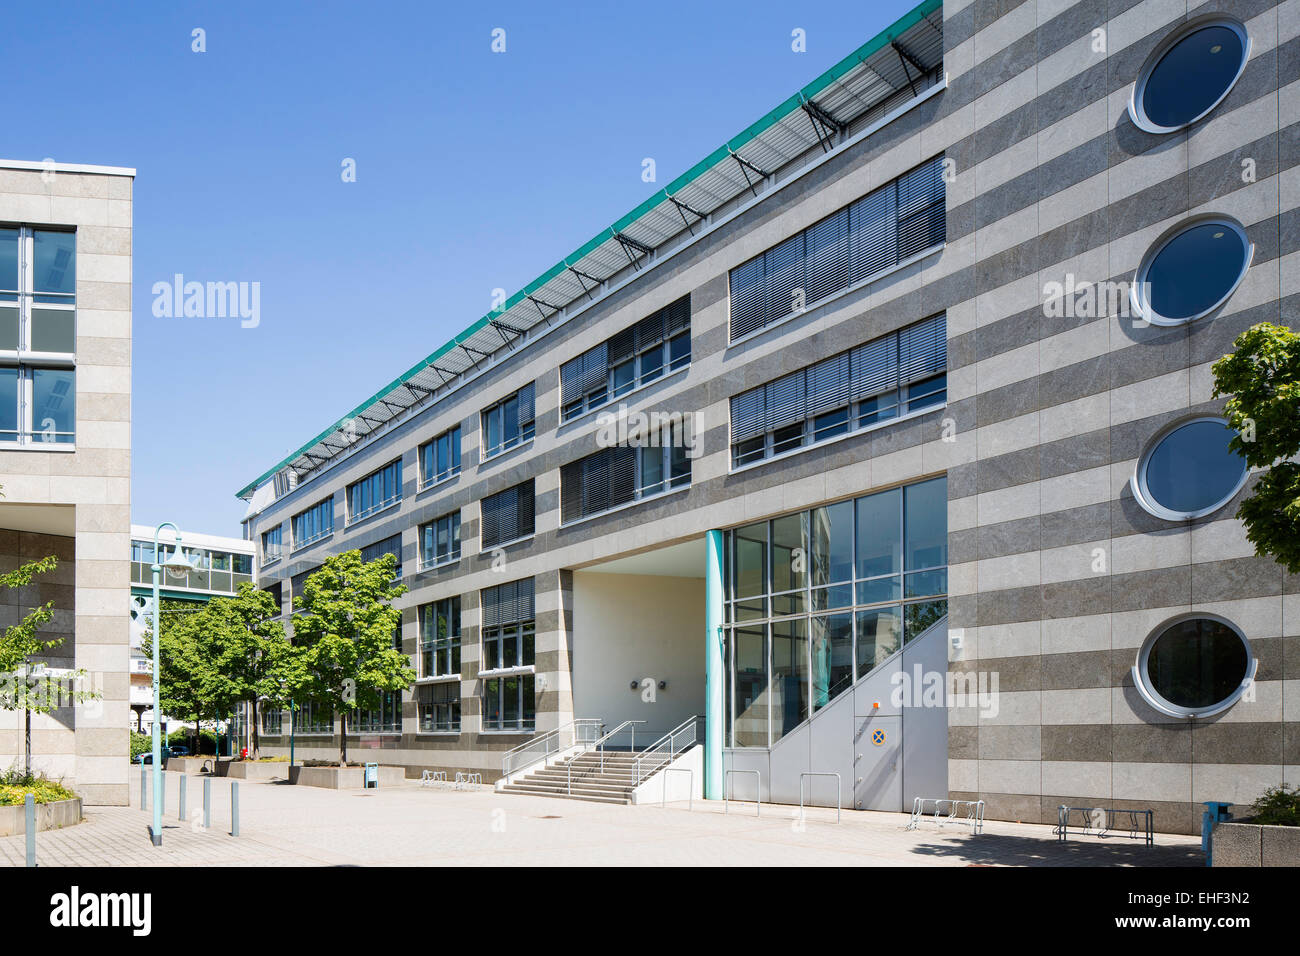 Das City-Forum in Rüsselsheim ist ein aus mehreren Gebäuden bestehender Komplex mit Büro-, Wohn- und Geschäftseinheiten. Stock Photo